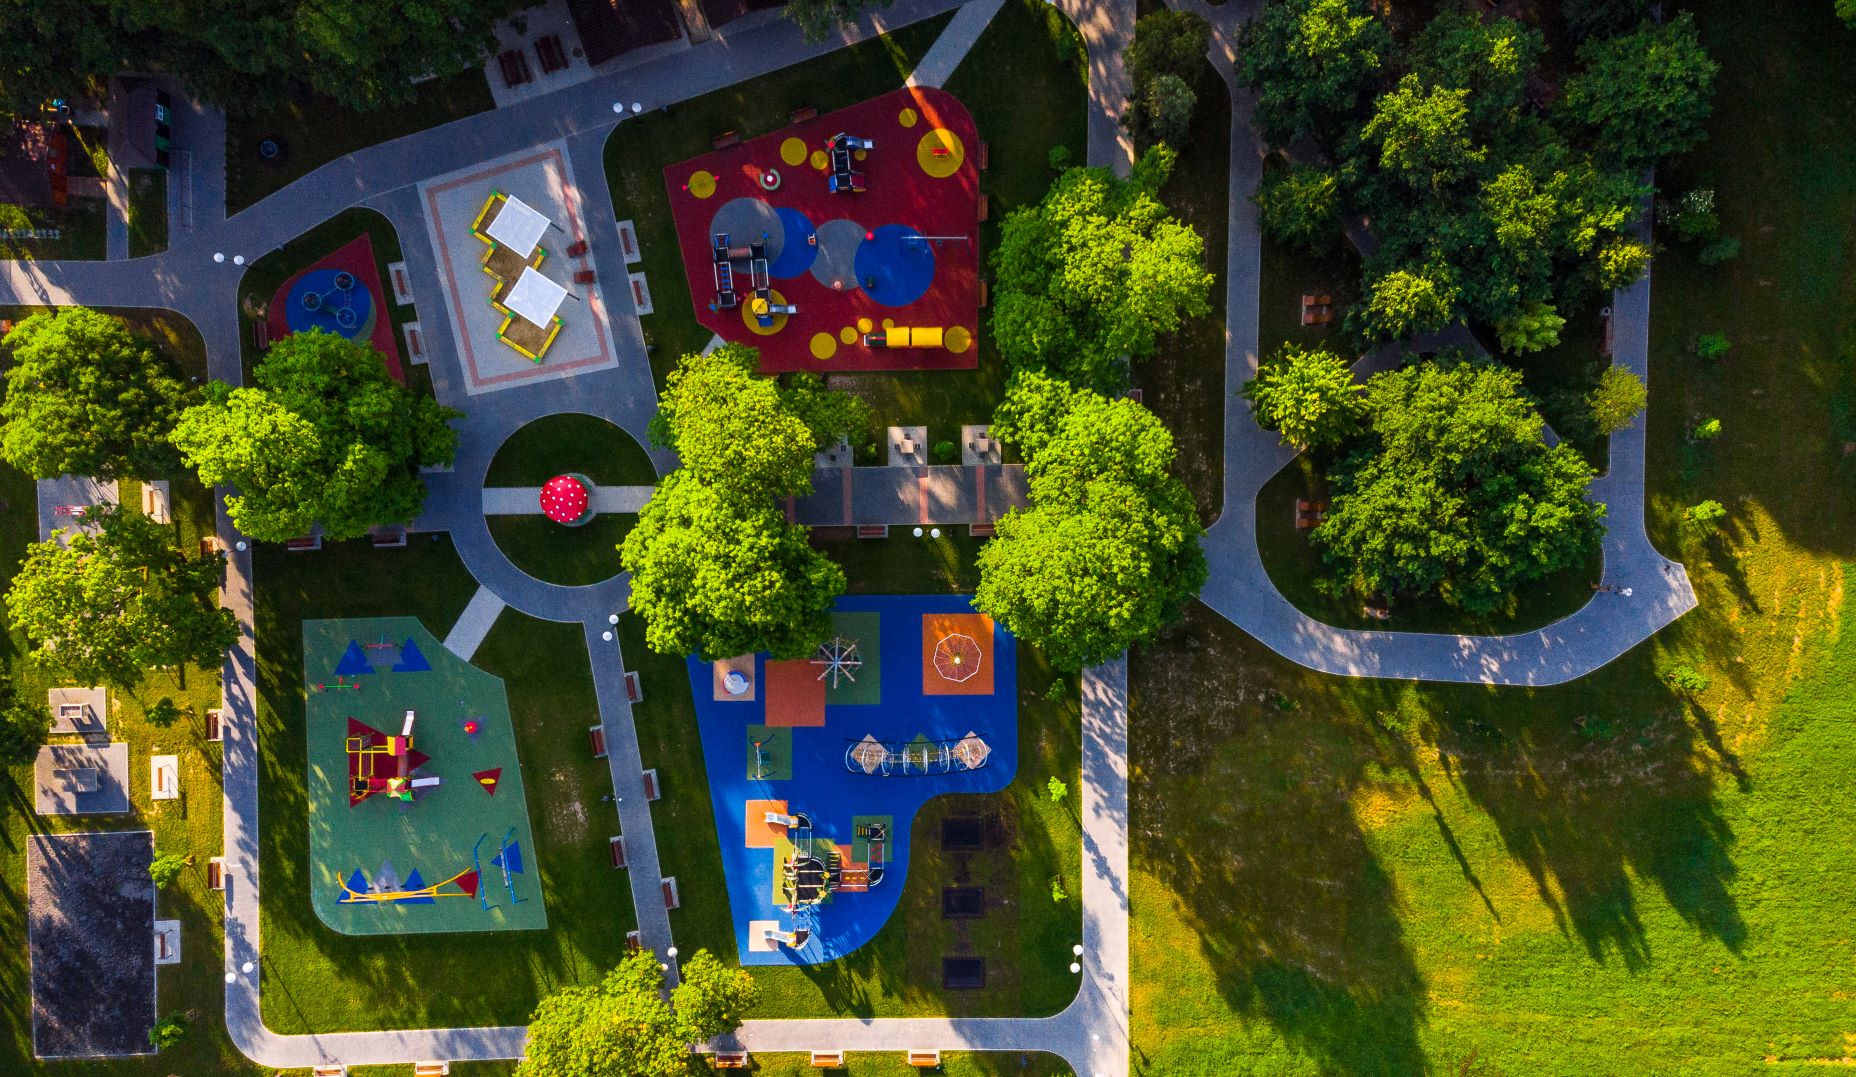 colorful-playground-in-public-park-aerial-creativ-2021-04-02-20-30-24-utc